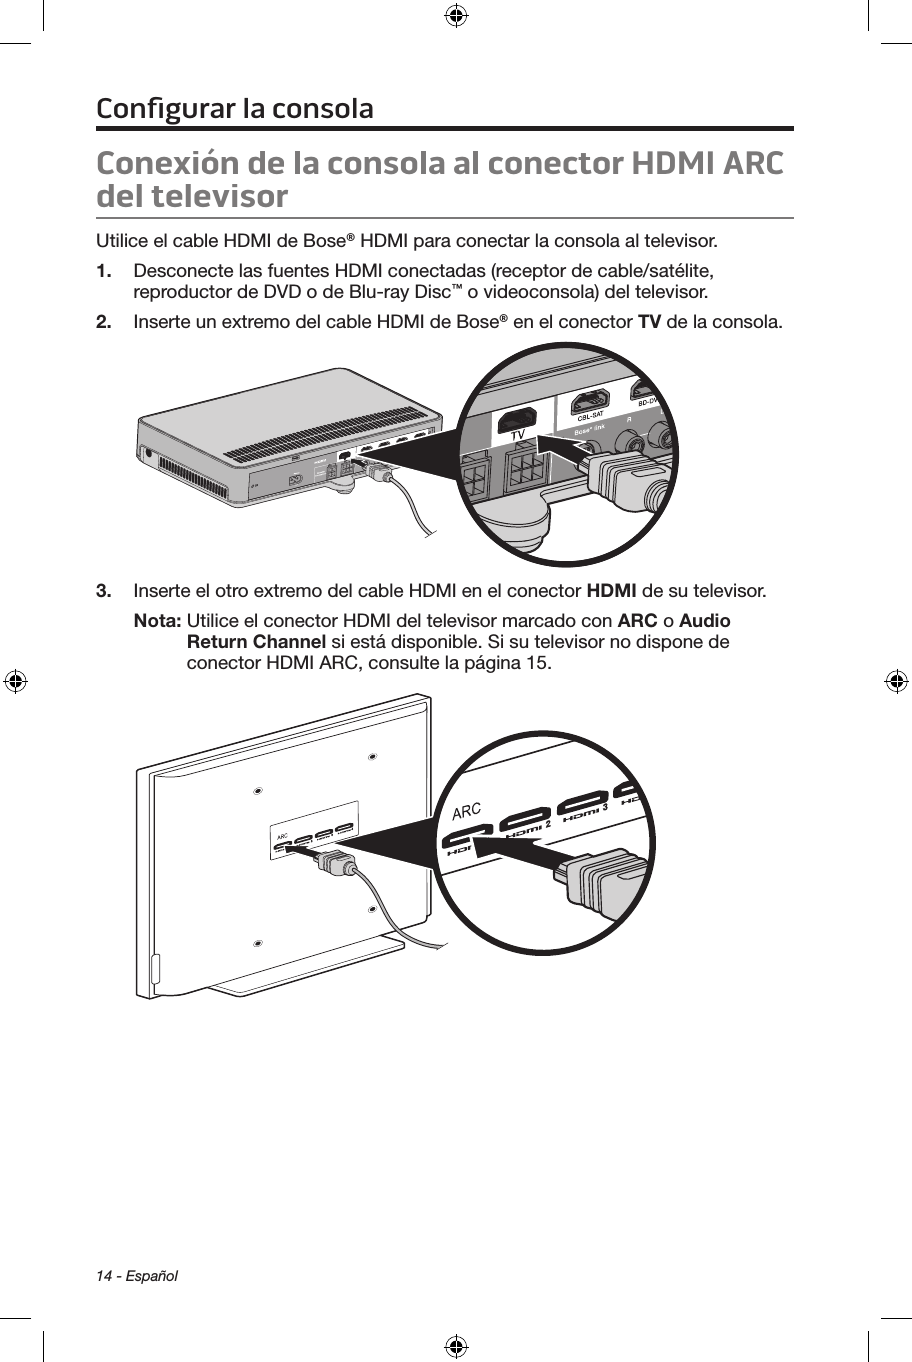 14 - EspañolConexión de la consola al conector HDMI ARC del televisorUtilice el cable HDMI de Bose® HDMI para conectar la consola al televisor. 1.  Desconecte las fuentes HDMI conectadas (receptor de cable/satélite, reproductor de DVD o de Blu-ray Disc™ o videoconsola) del televisor.2.  Inserte un extremo del cable HDMI de Bose® en el conector TV de la consola.3.  Inserte el otro extremo del cable HDMI en el conector HDMI de su televisor.Nota:  Utilice el conector HDMI del televisor marcado con ARC o Audio Return Channel si está disponible. Si su televisor no dispone de conector HDMI ARC, consulte la página 15.Conﬁgurar la consola